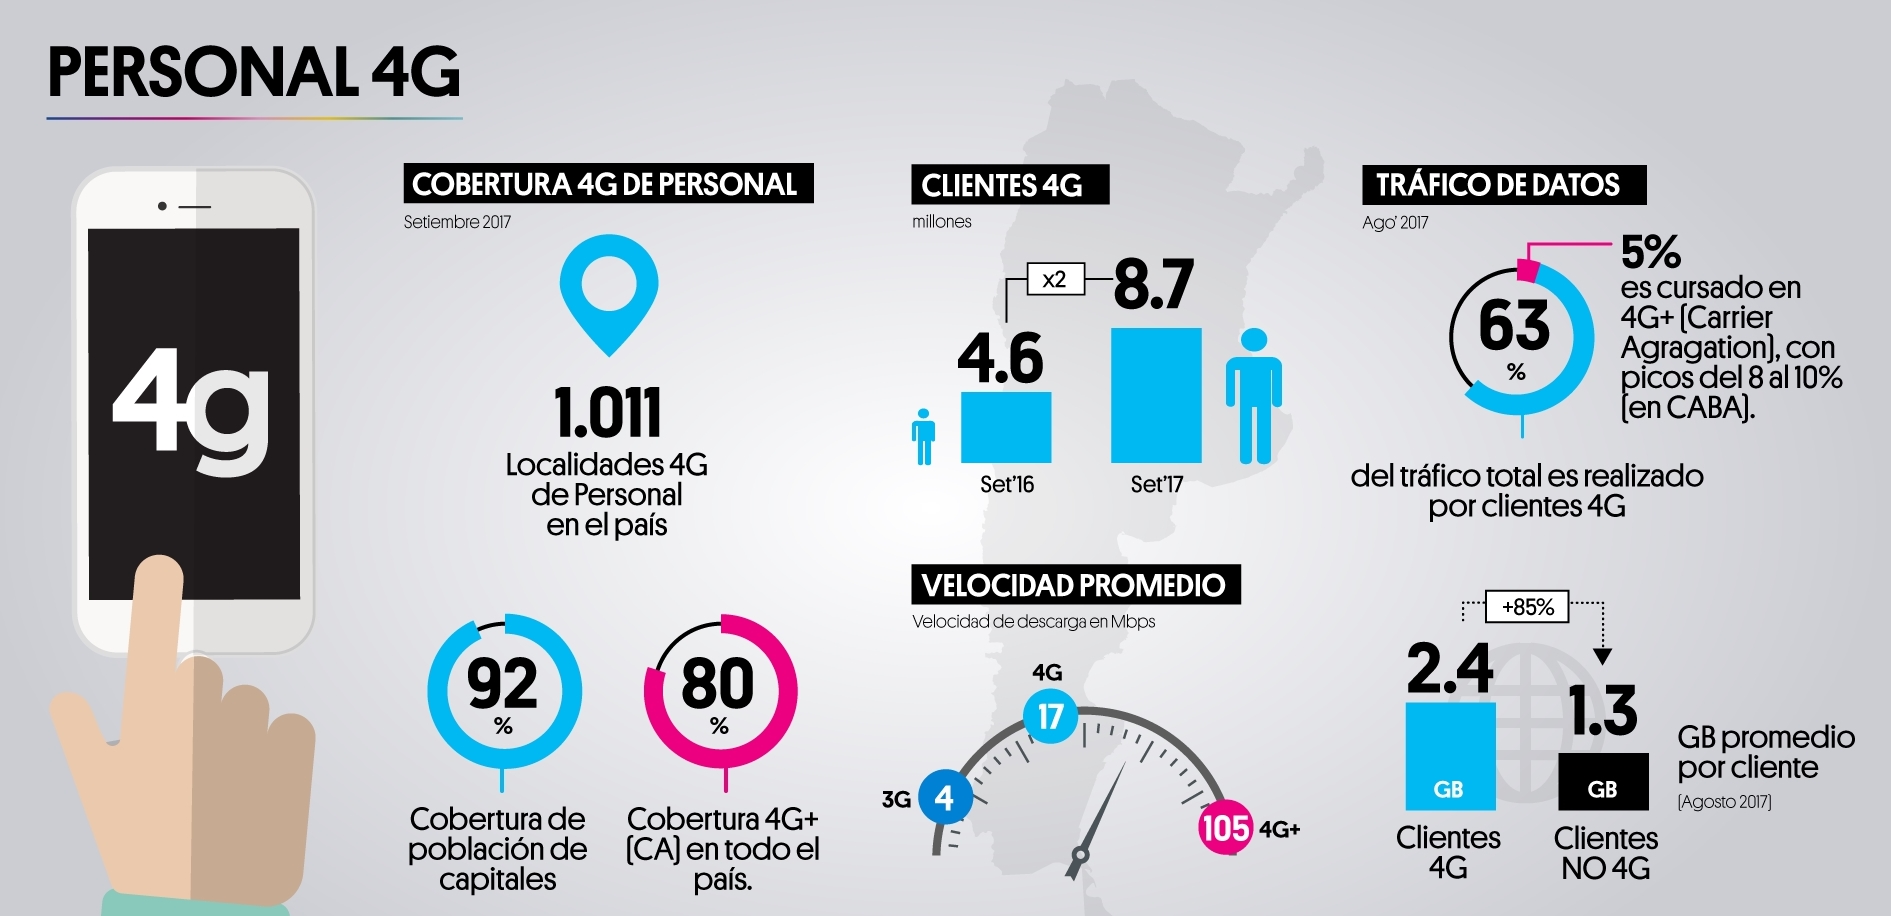 Infografía del despliege 4G de Personal en Argentina.